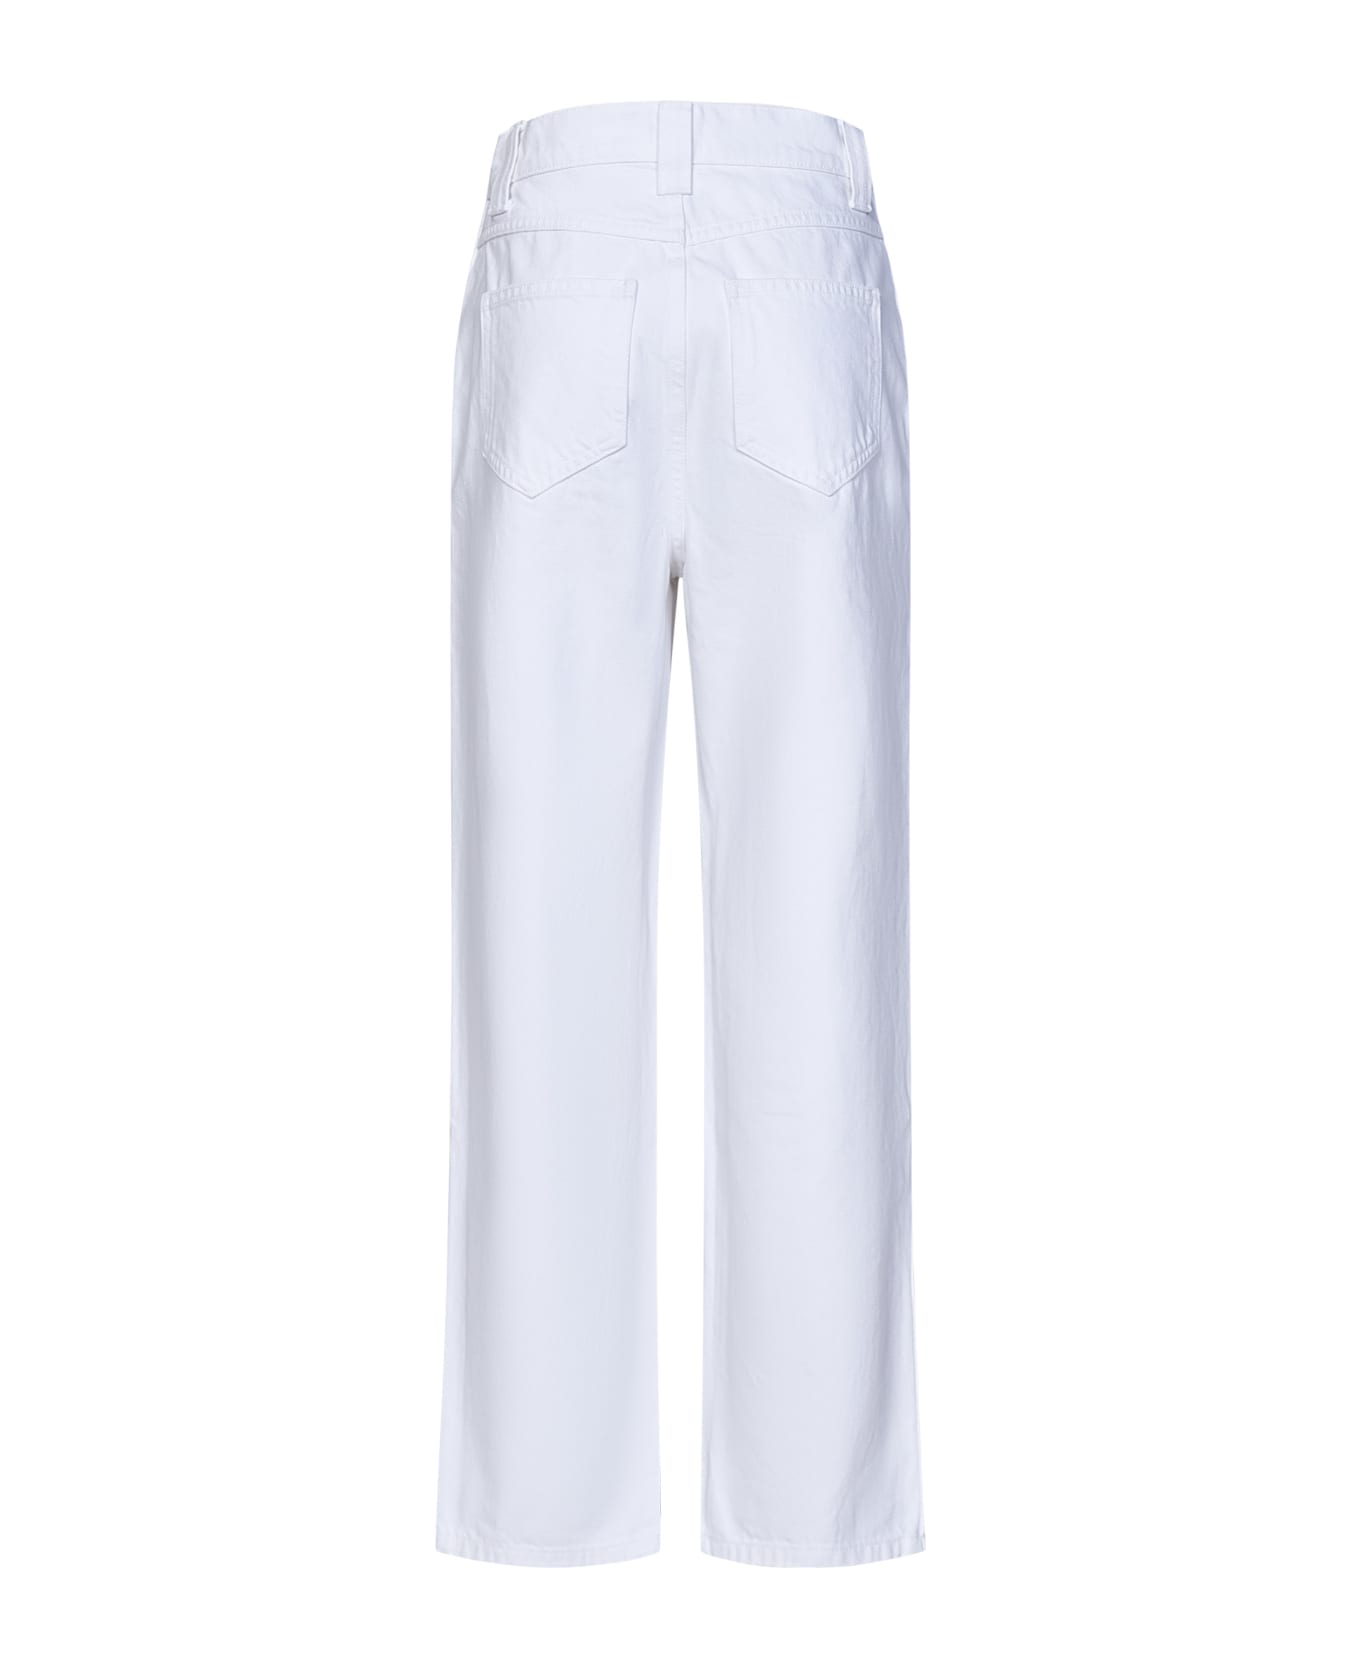 Khaite The Shalbi Jeans - White デニム